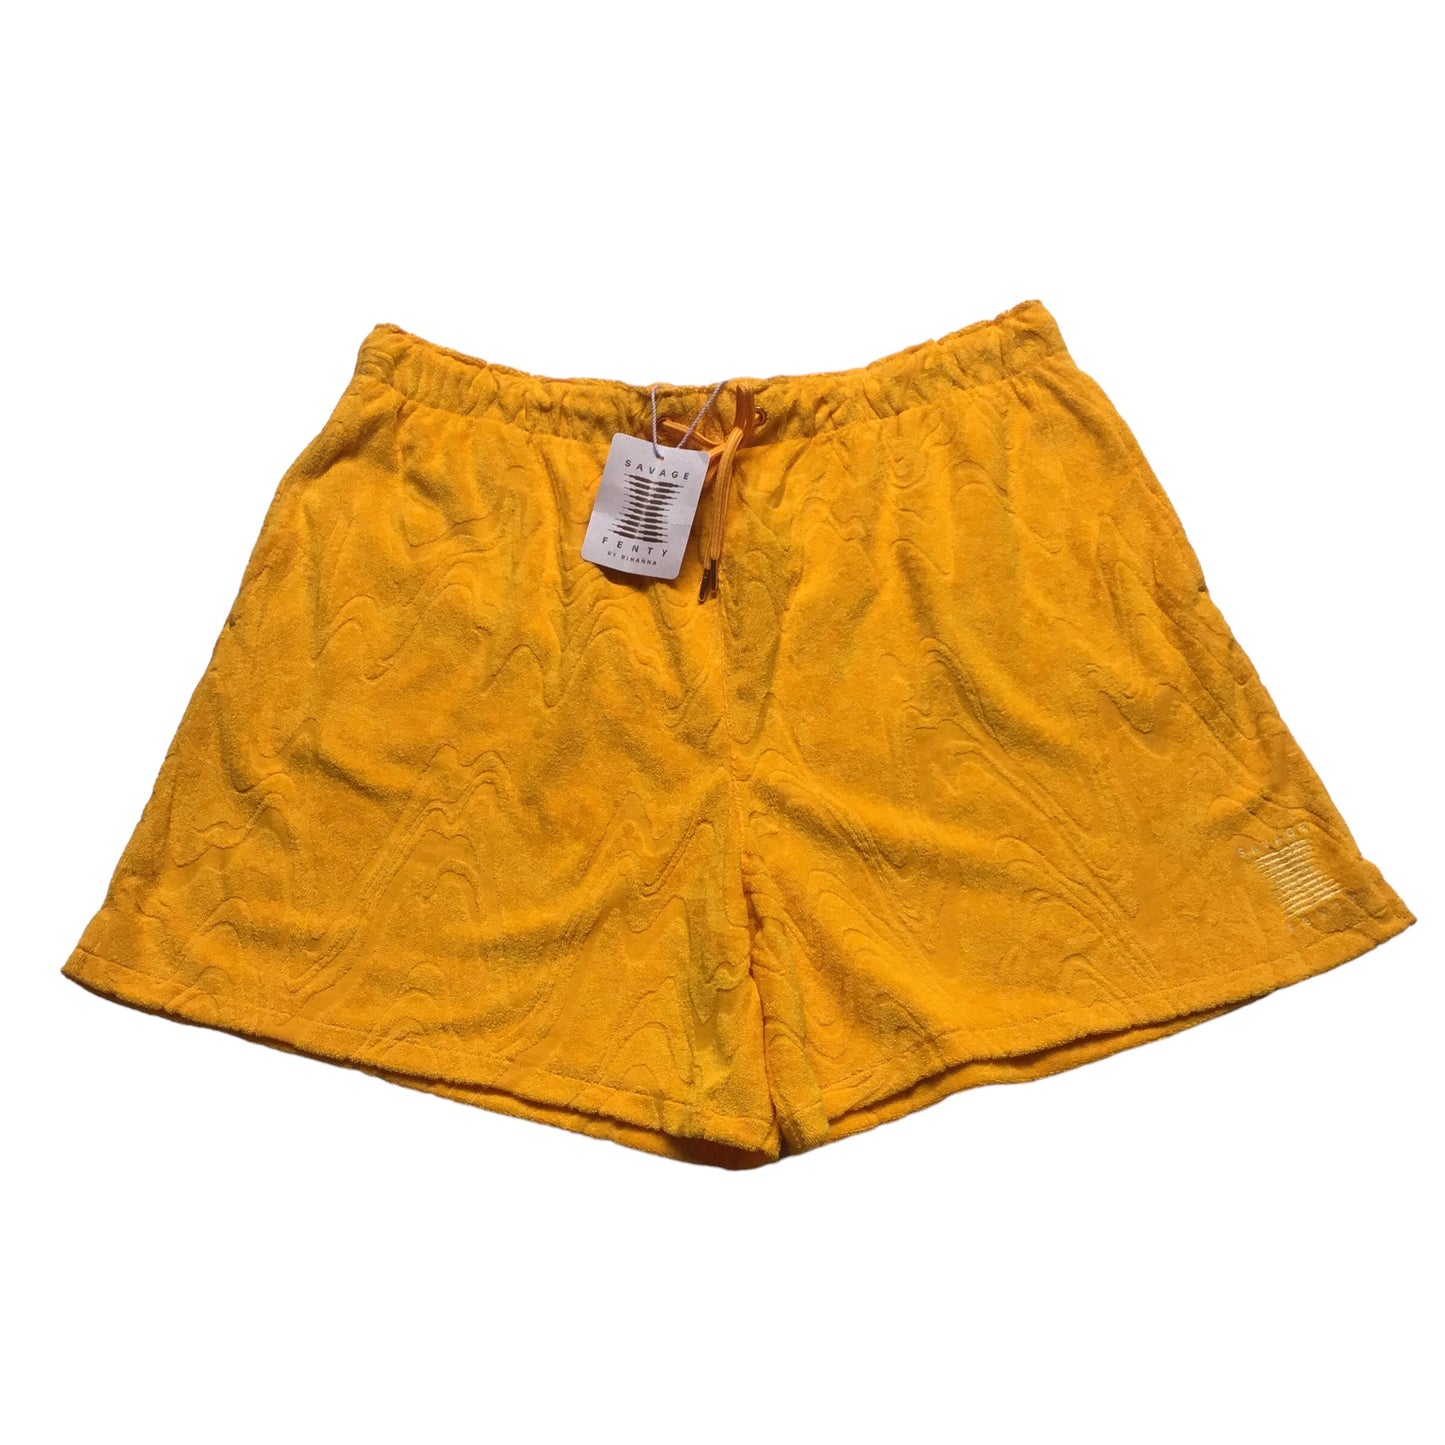 Orange Shorts Cmc, Size M